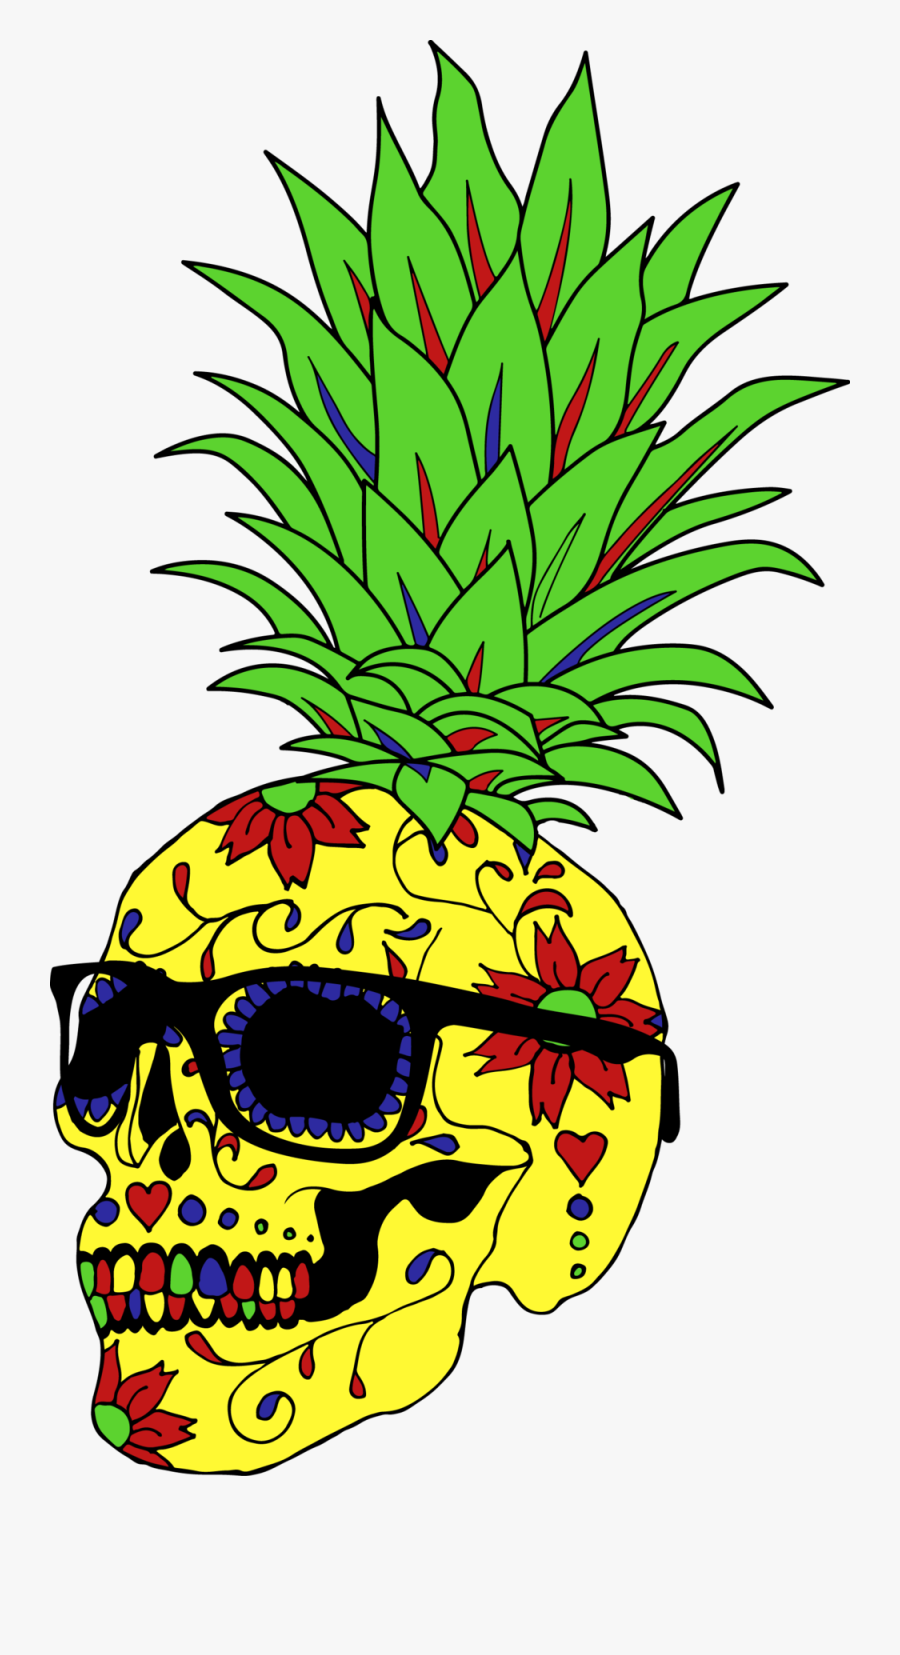 Skull Clipart Pineapple - Pineapple Skull Png, Transparent Clipart